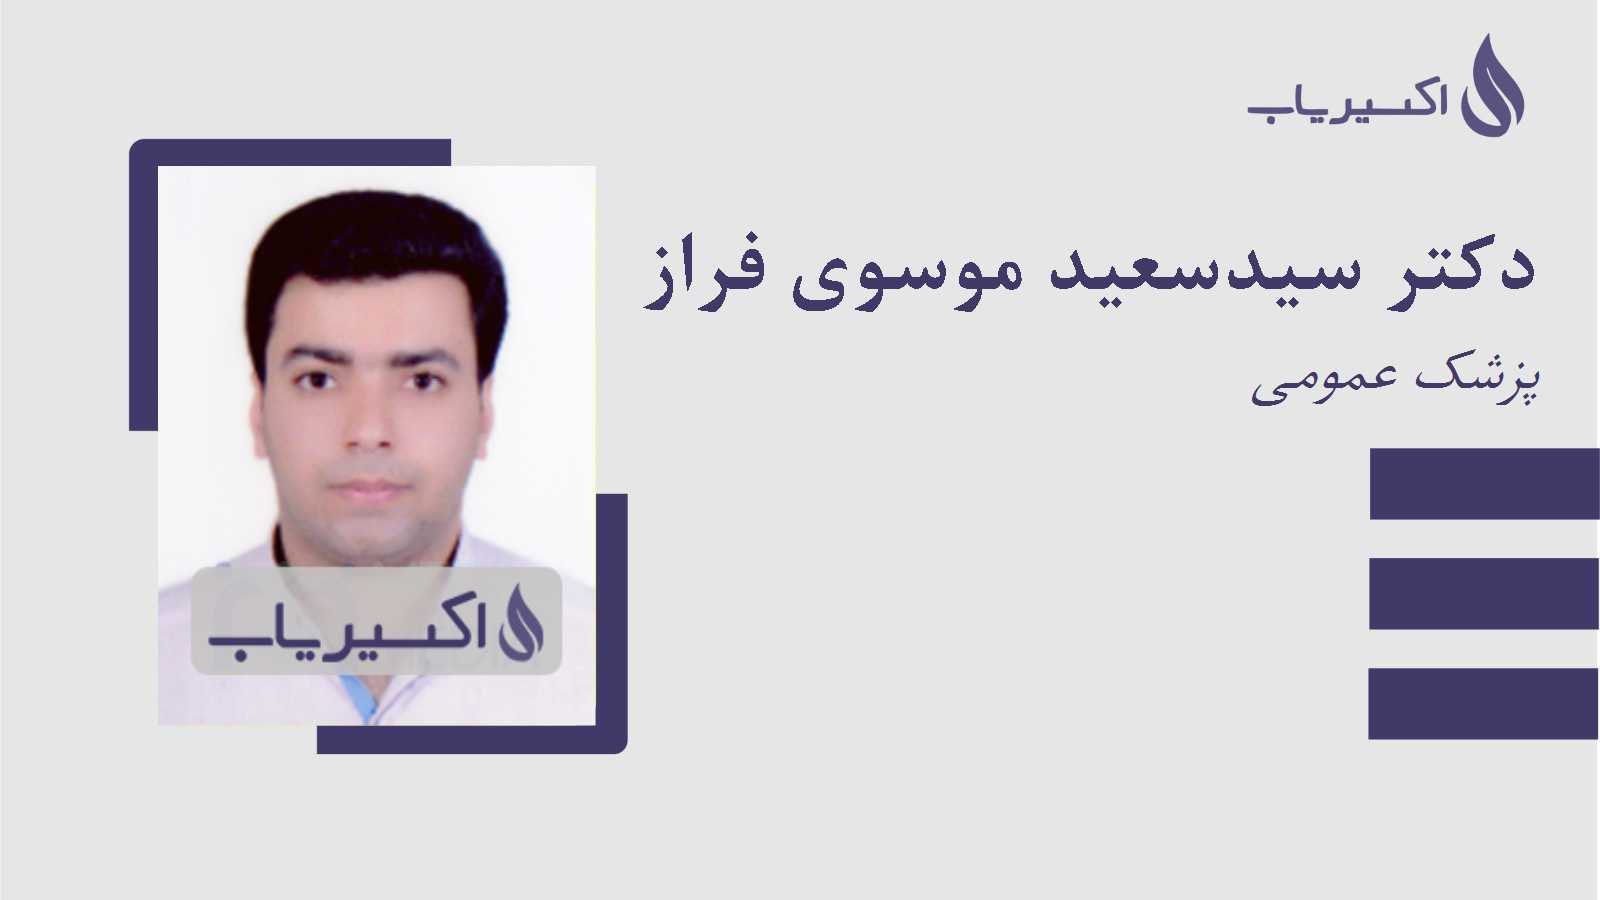 مطب دکتر سیدسعید موسوی فراز